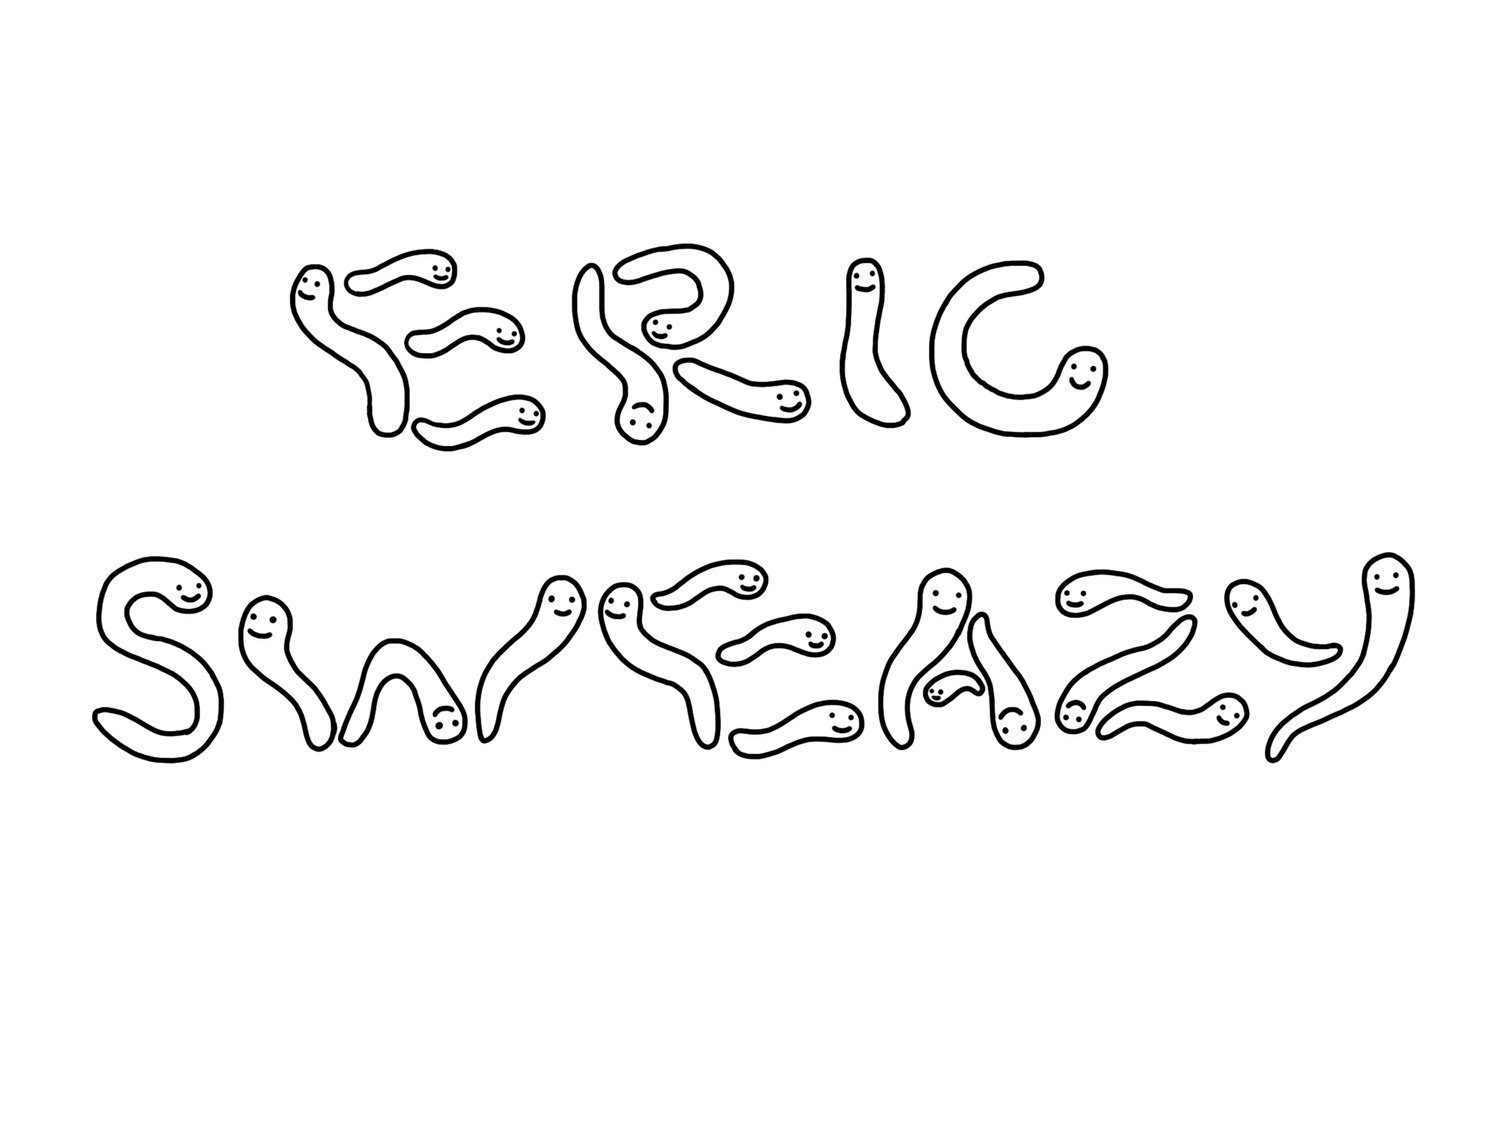 Eric Sweazy